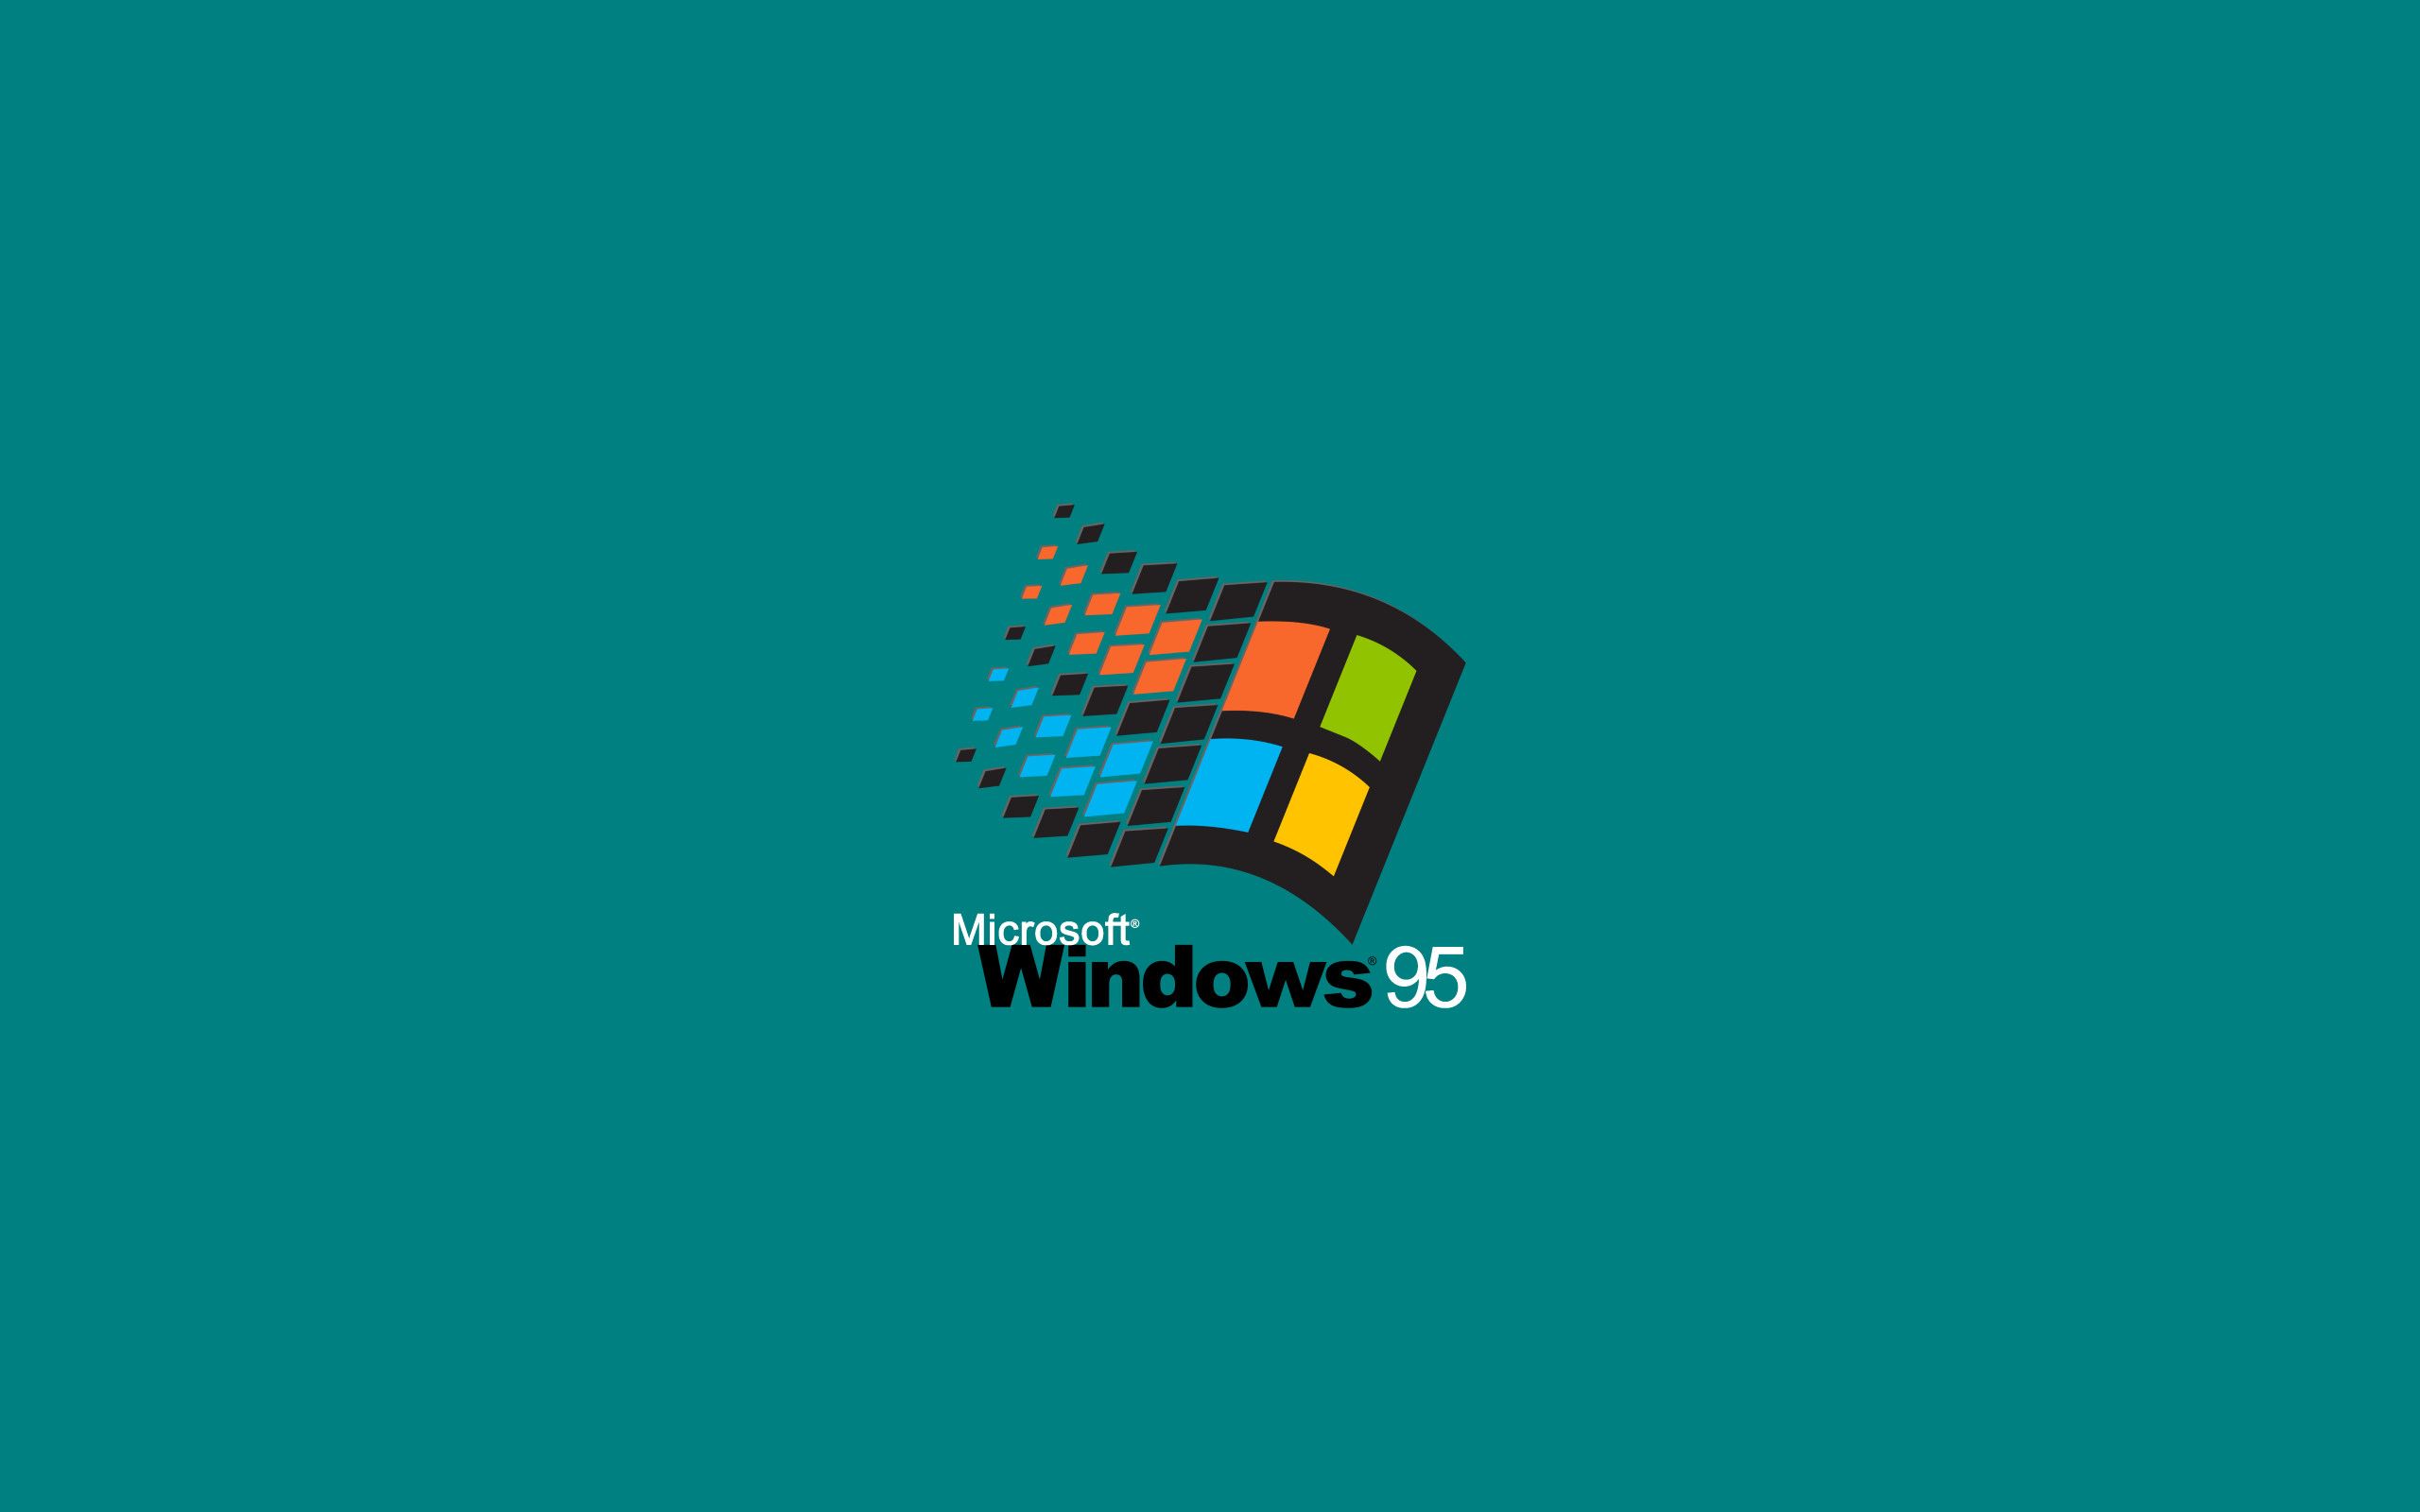 Điều gì làm cho hình nền mặc định của Windows 95 trở nên đặc biệt? Tất nhiên, sự gắn kết với quá khứ và tính cộng đồng mà nó mang lại. Tại WallpaperDog, bạn sẽ tìm thấy những hình nền đẹp nhất và đáng nhớ nhất của Windows 95 để chia sẻ với mọi người.